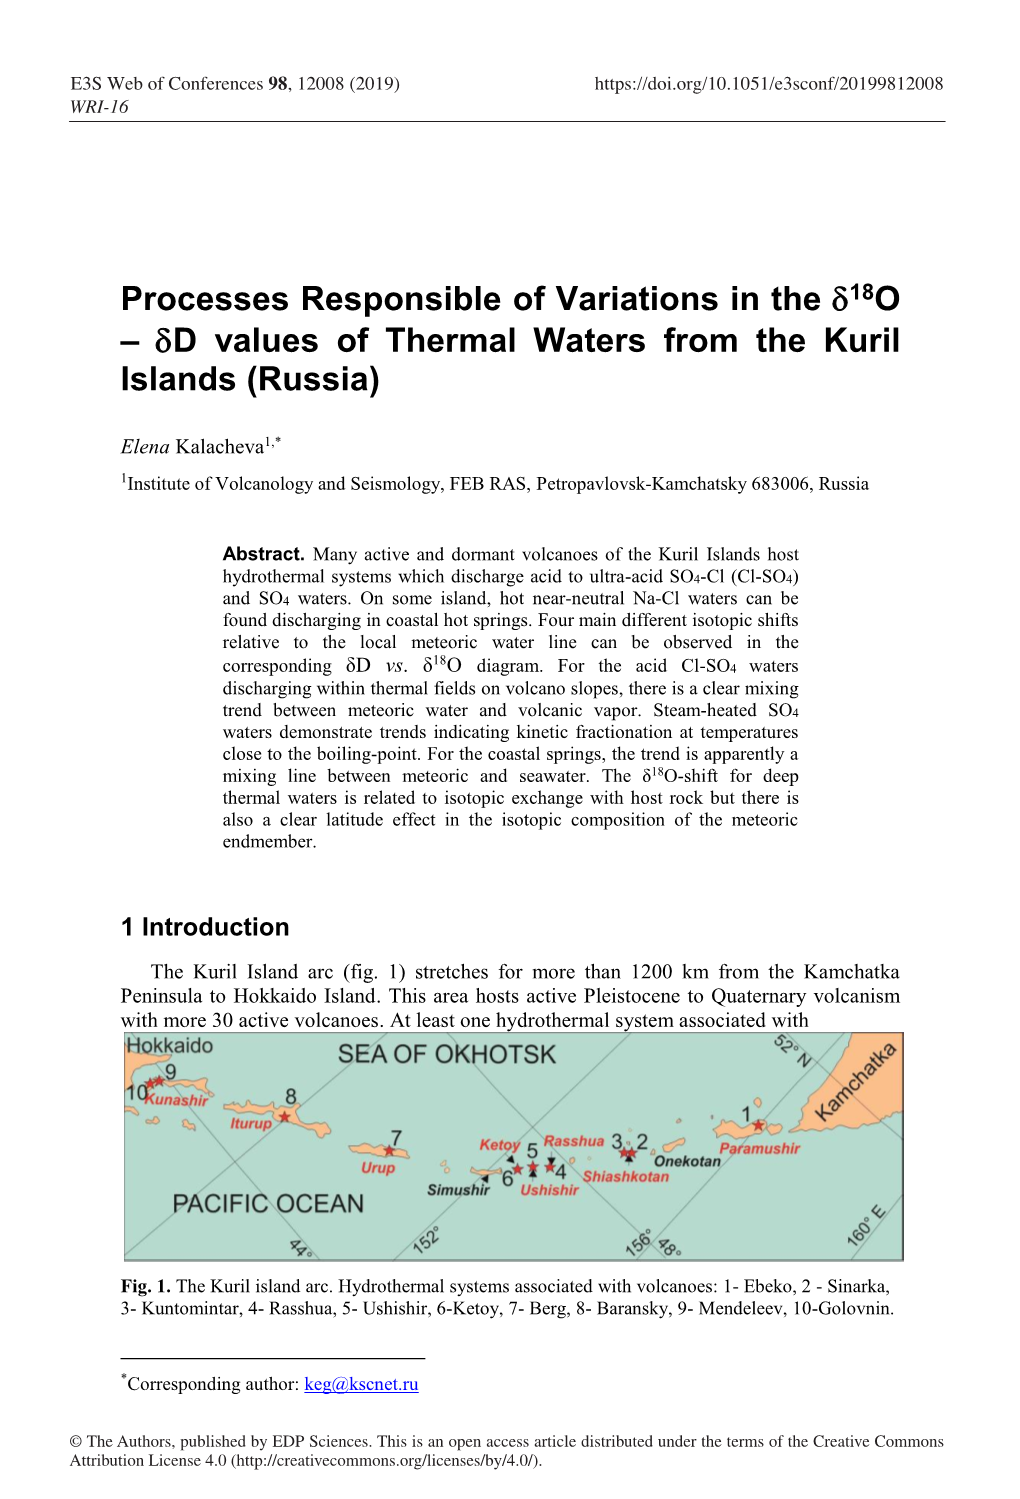 Δd Values of Thermal Waters from the Kuril Islands